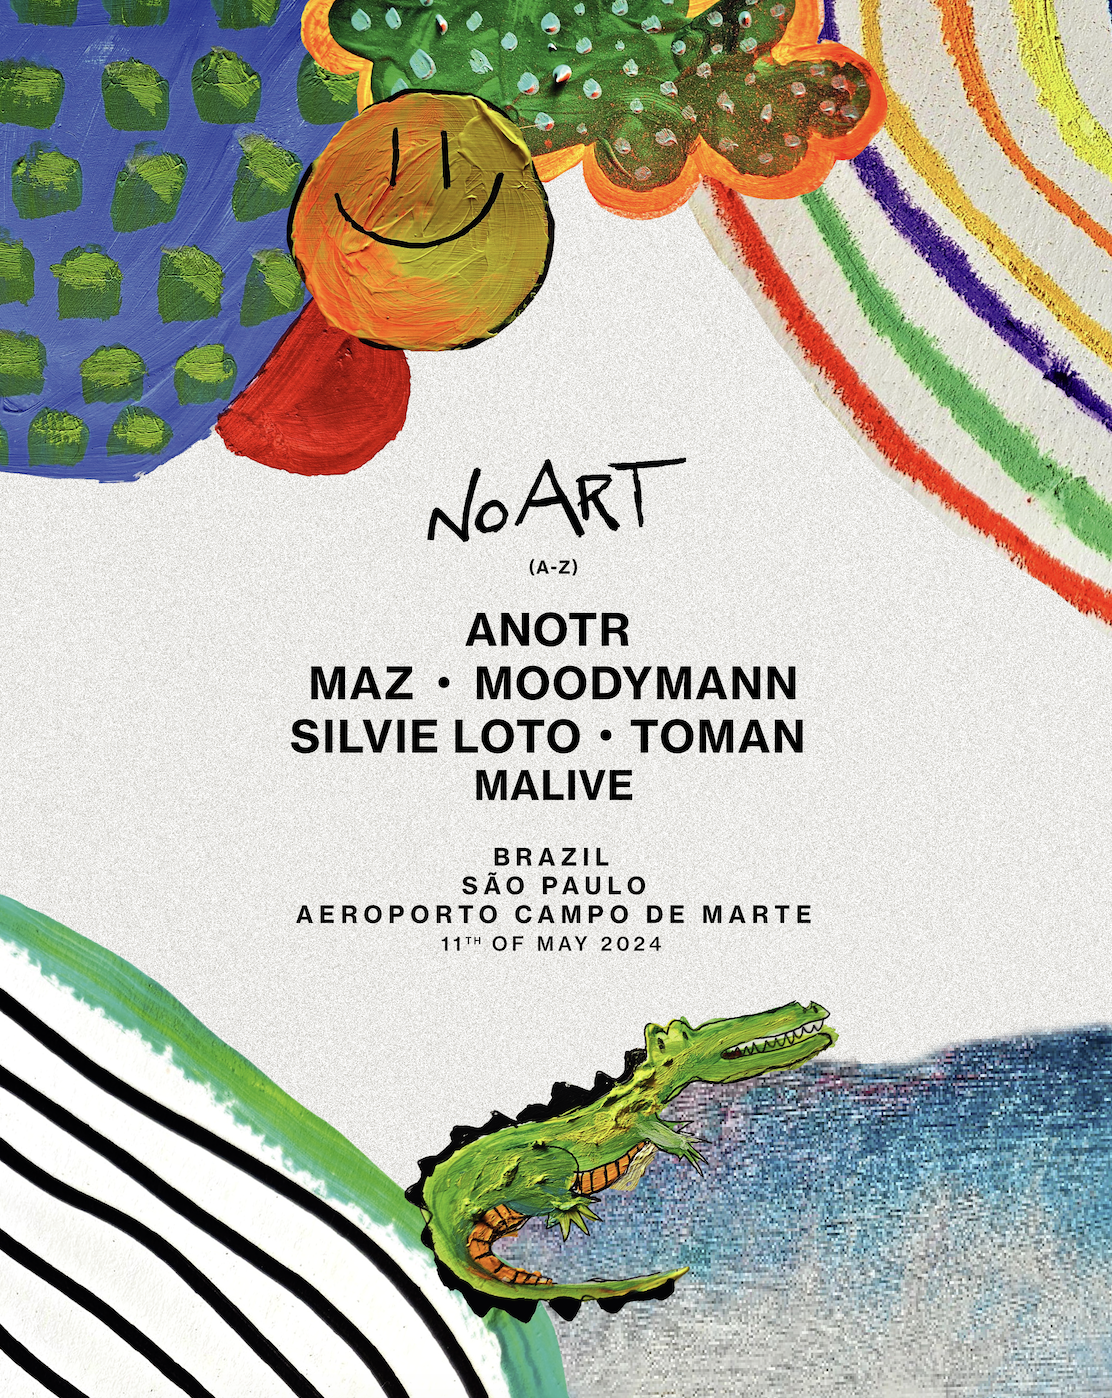 NO ART estreia em São Paulo no dia 11 de maio com ANOTR, Moodymann, Maz e mais